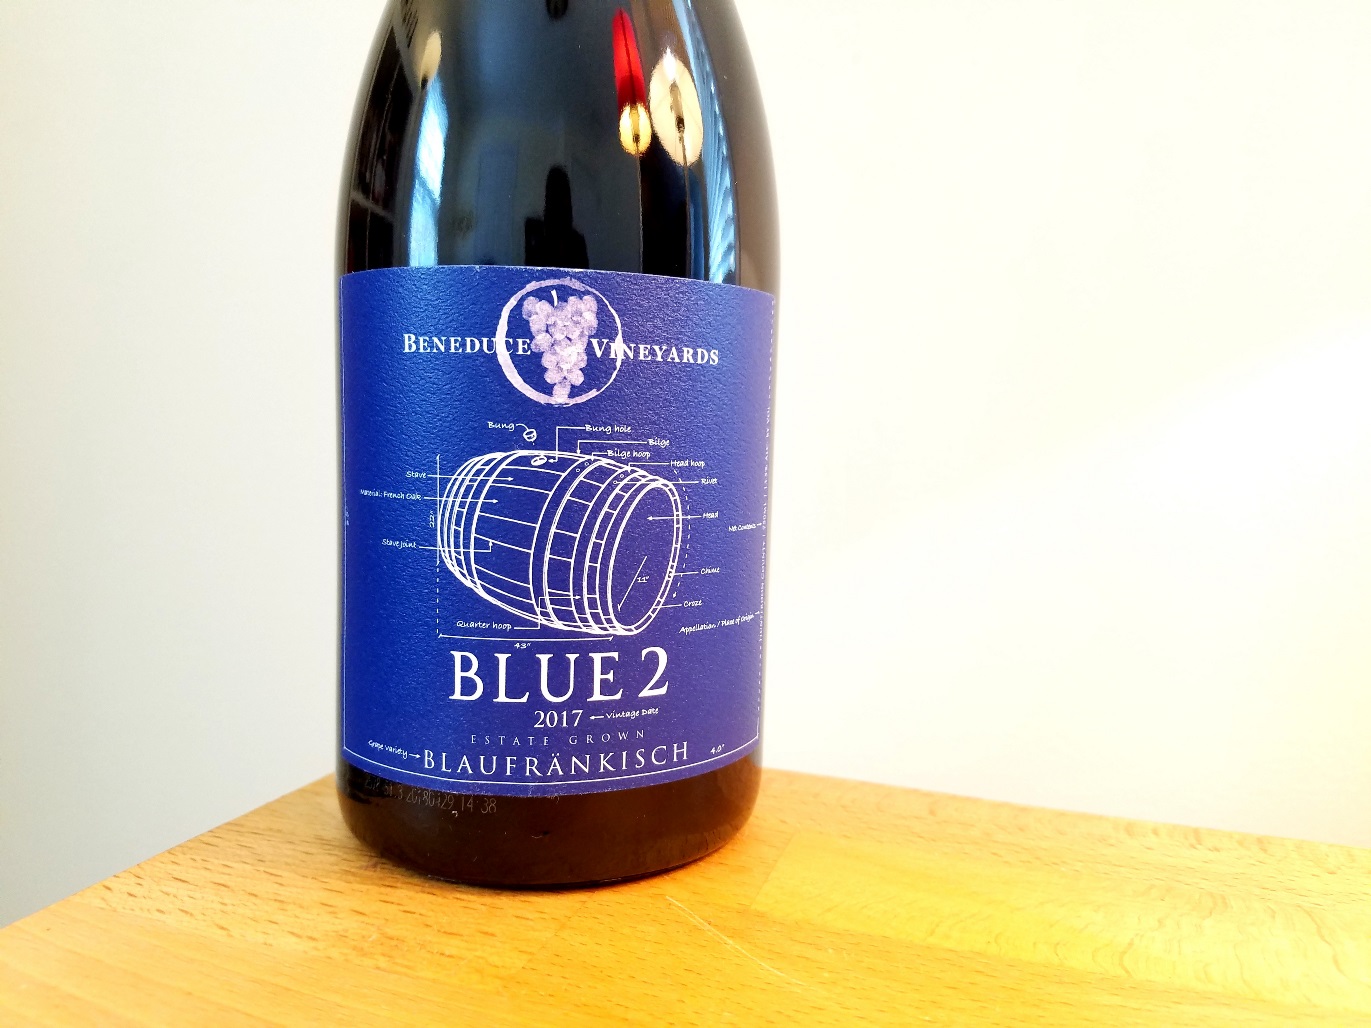 Beneduce Vineyards, Blue 2 Blaufränkisch 2017, New Jersey, Wine Casual